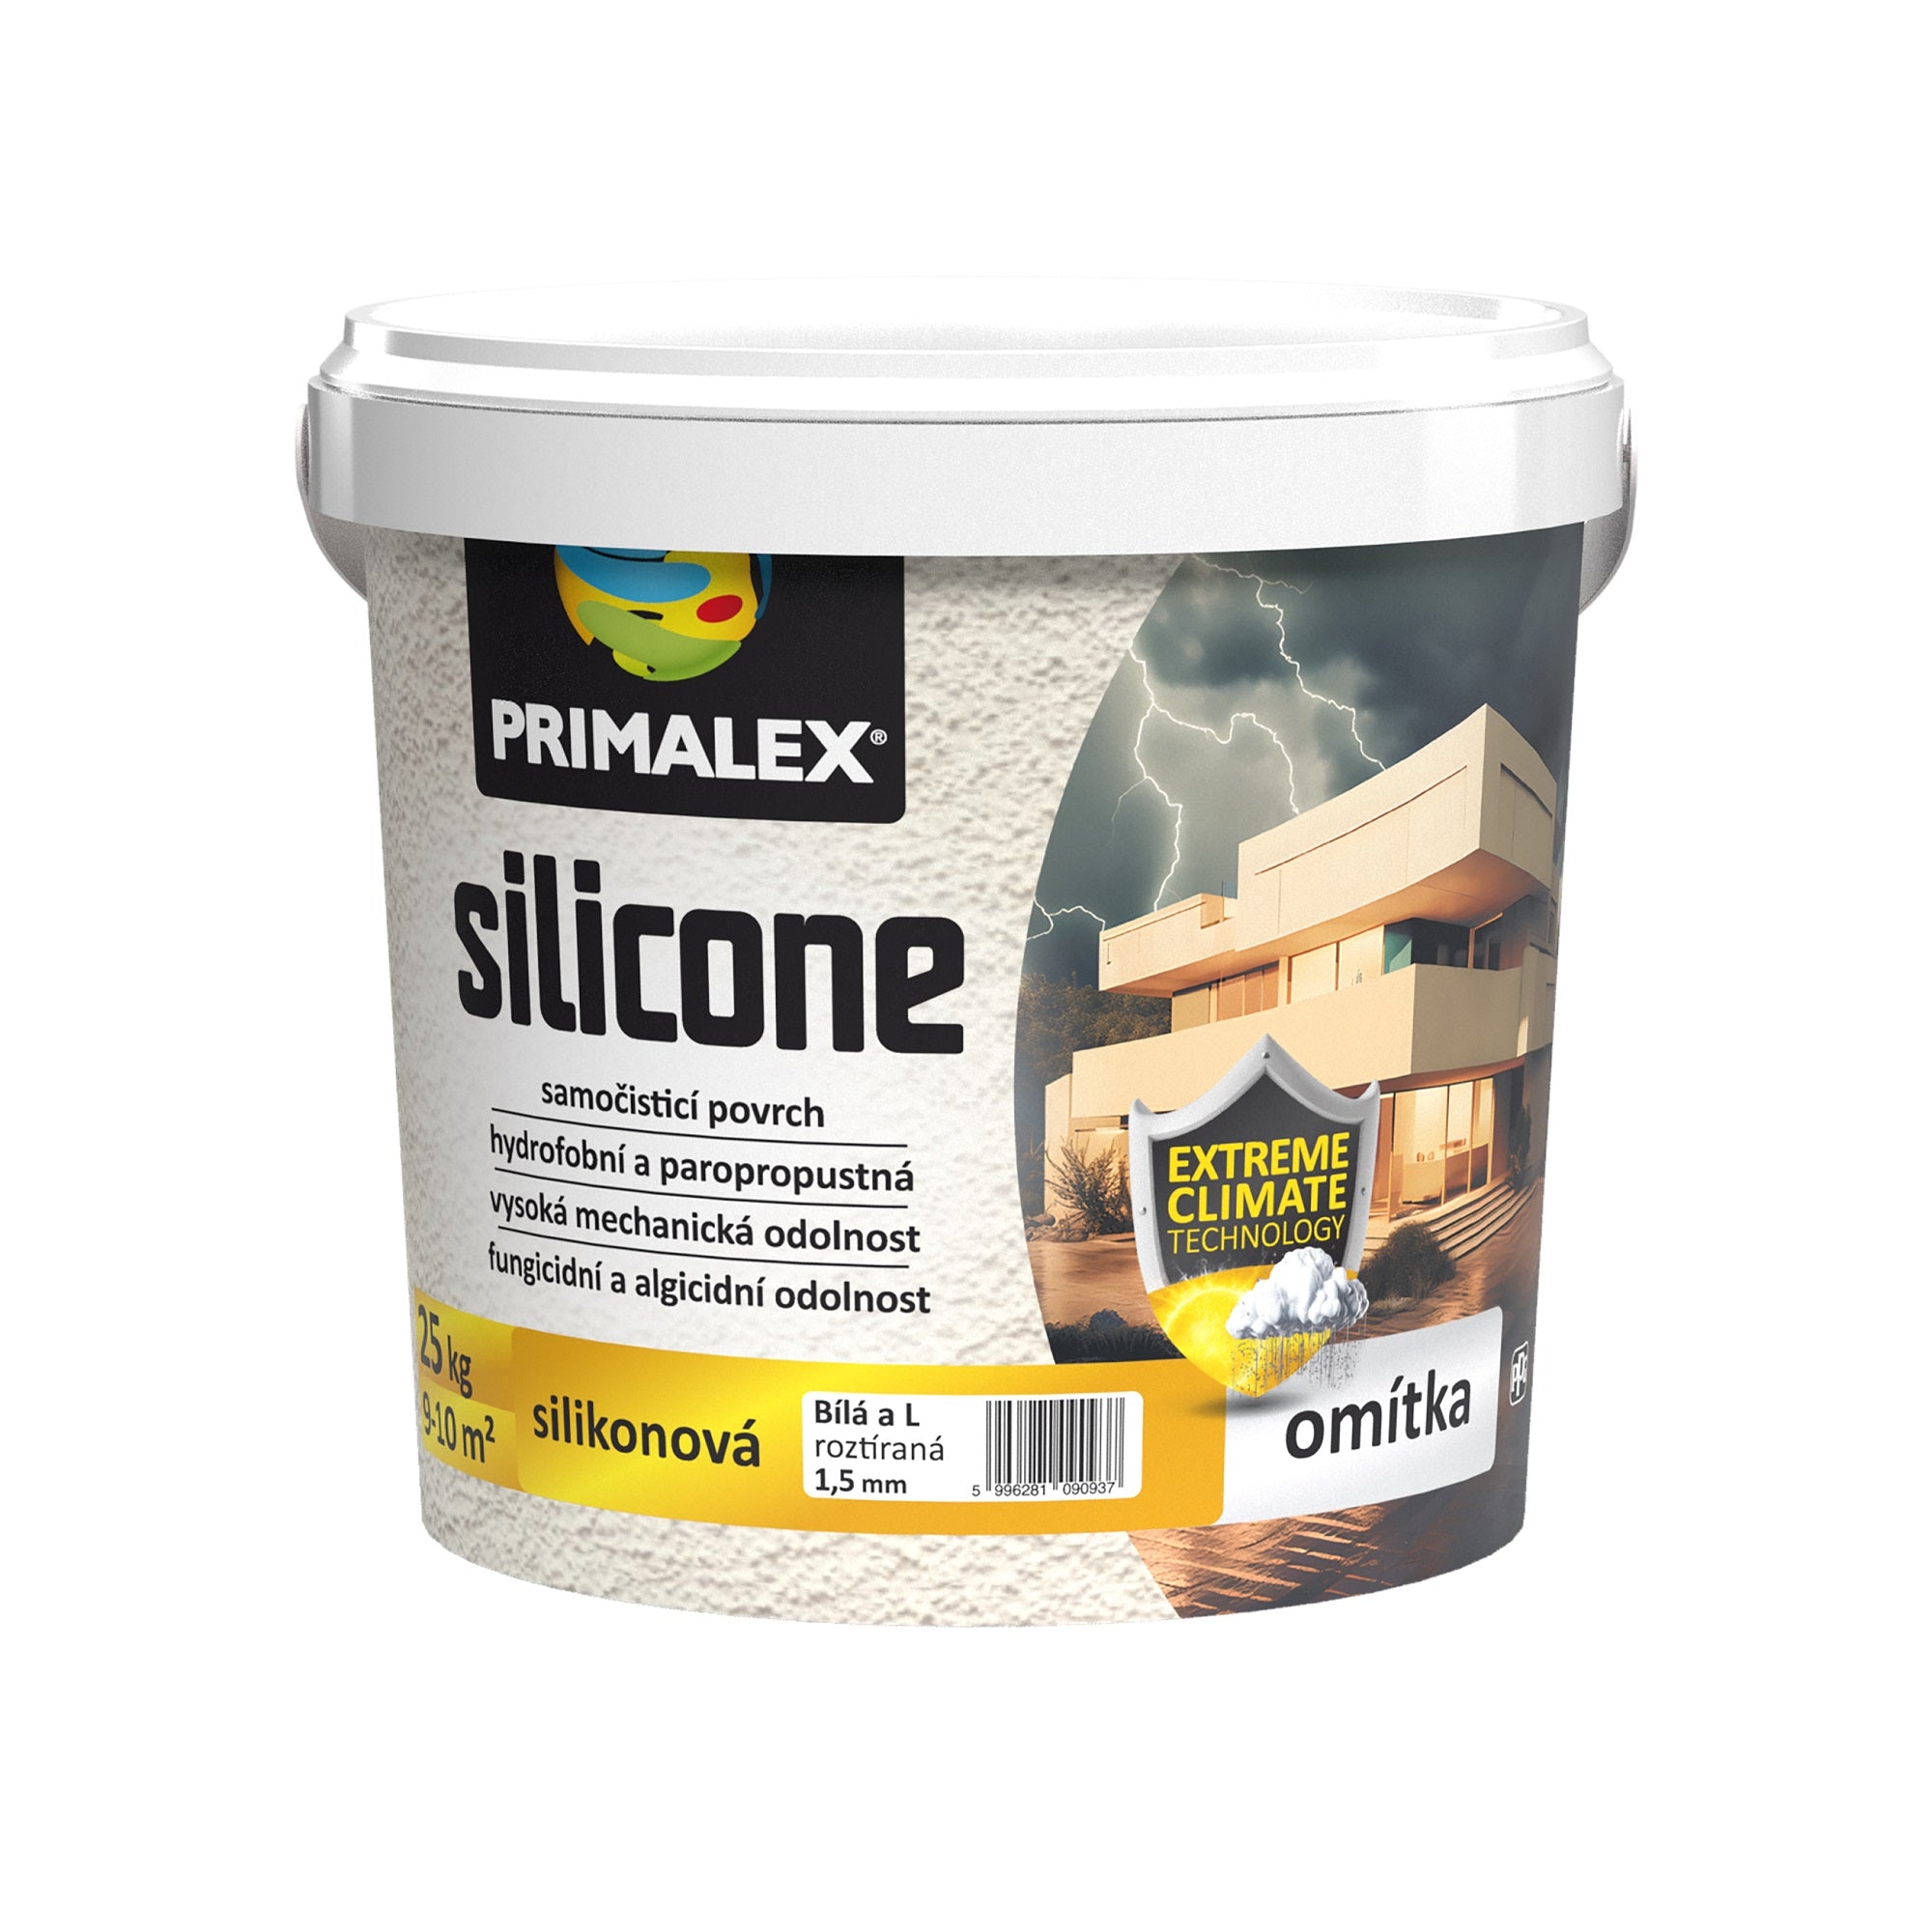 PRIMALEX silicone fasádní silikonová omítka roztíraná 25 kg